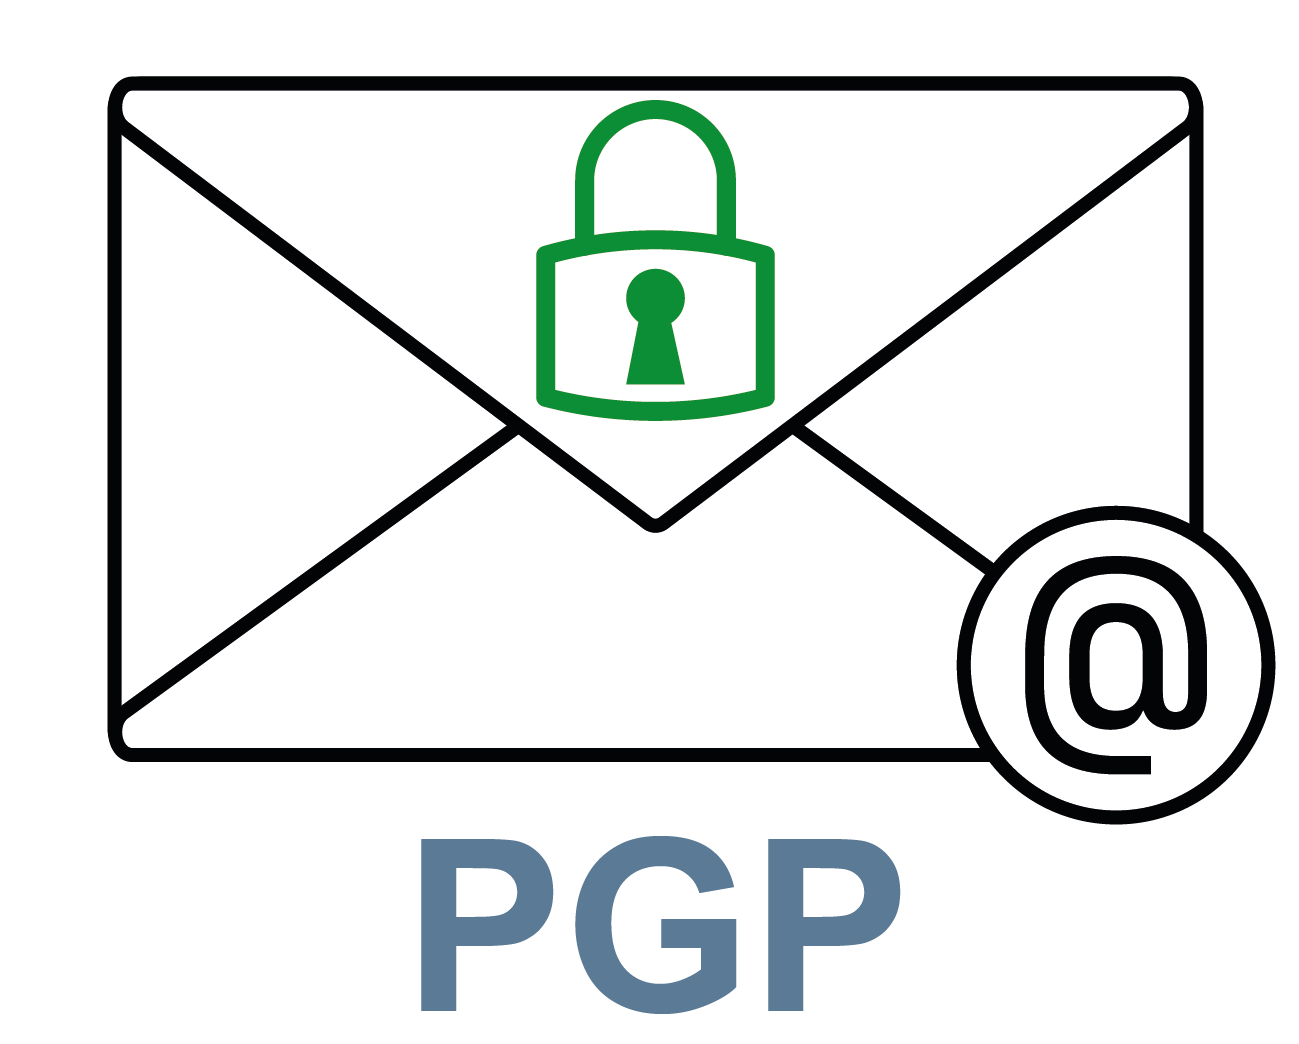 PGP - Pretty Good Privacy